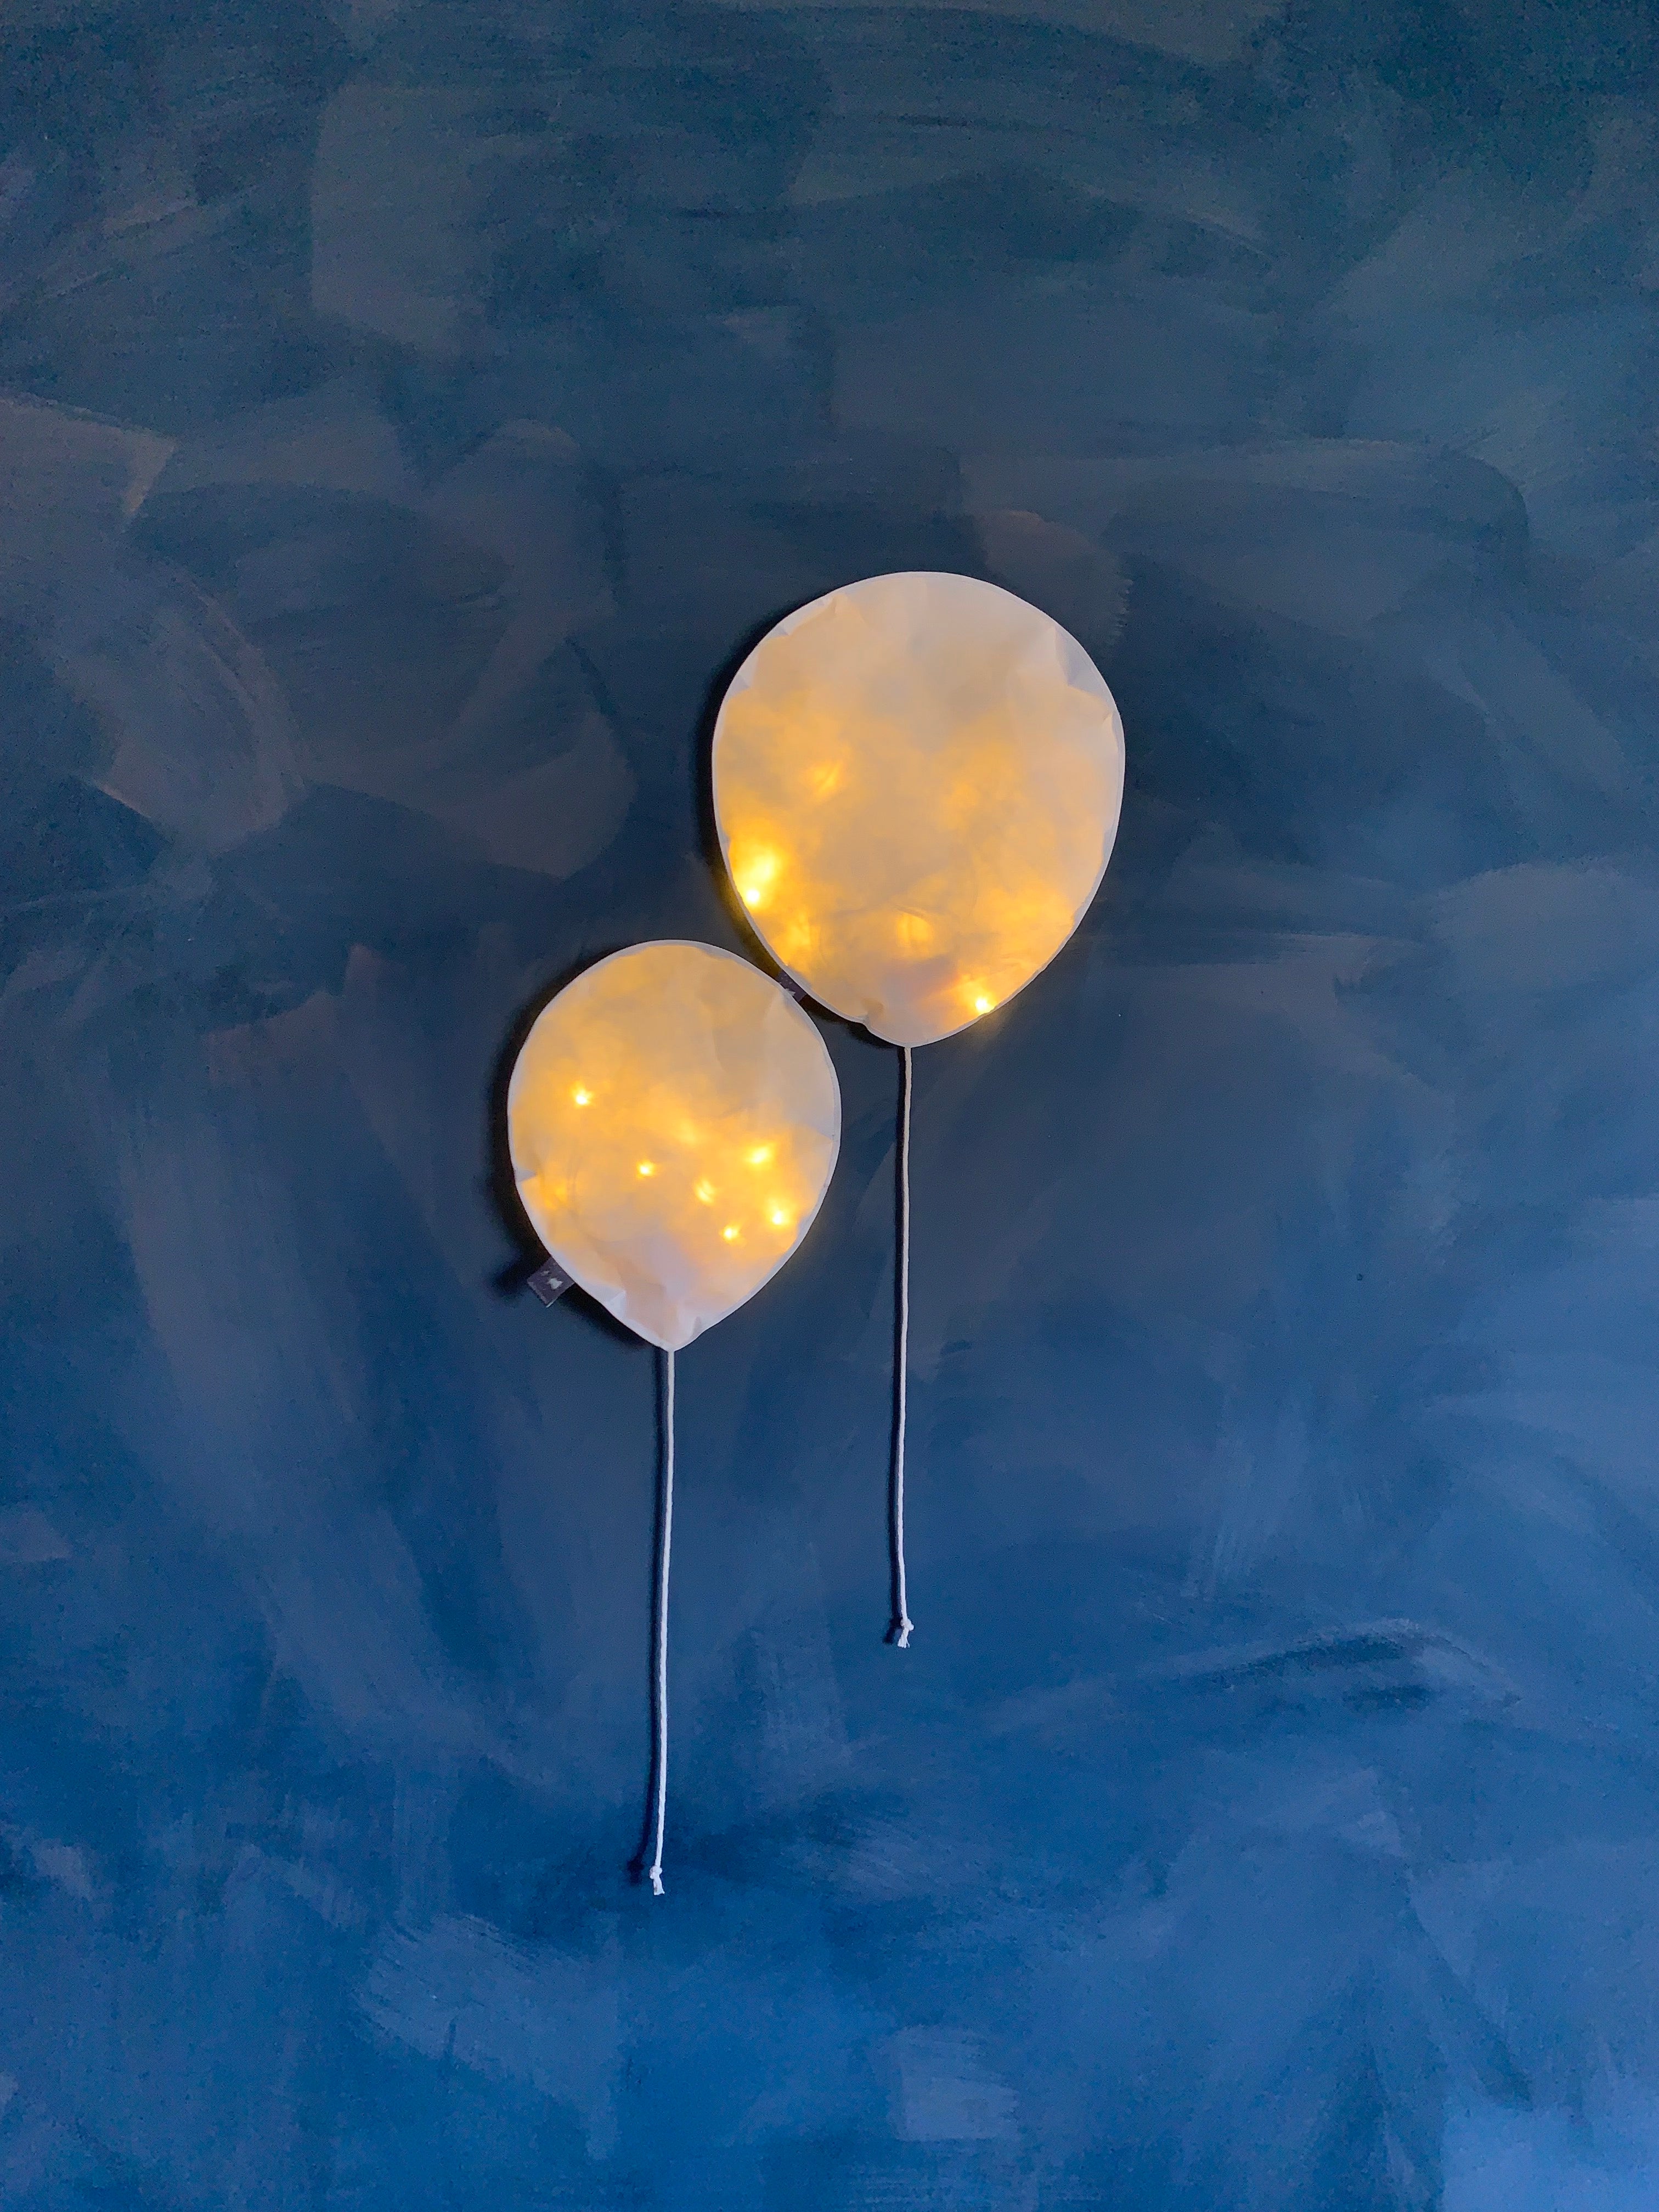 Duet of White Lighting Balloons